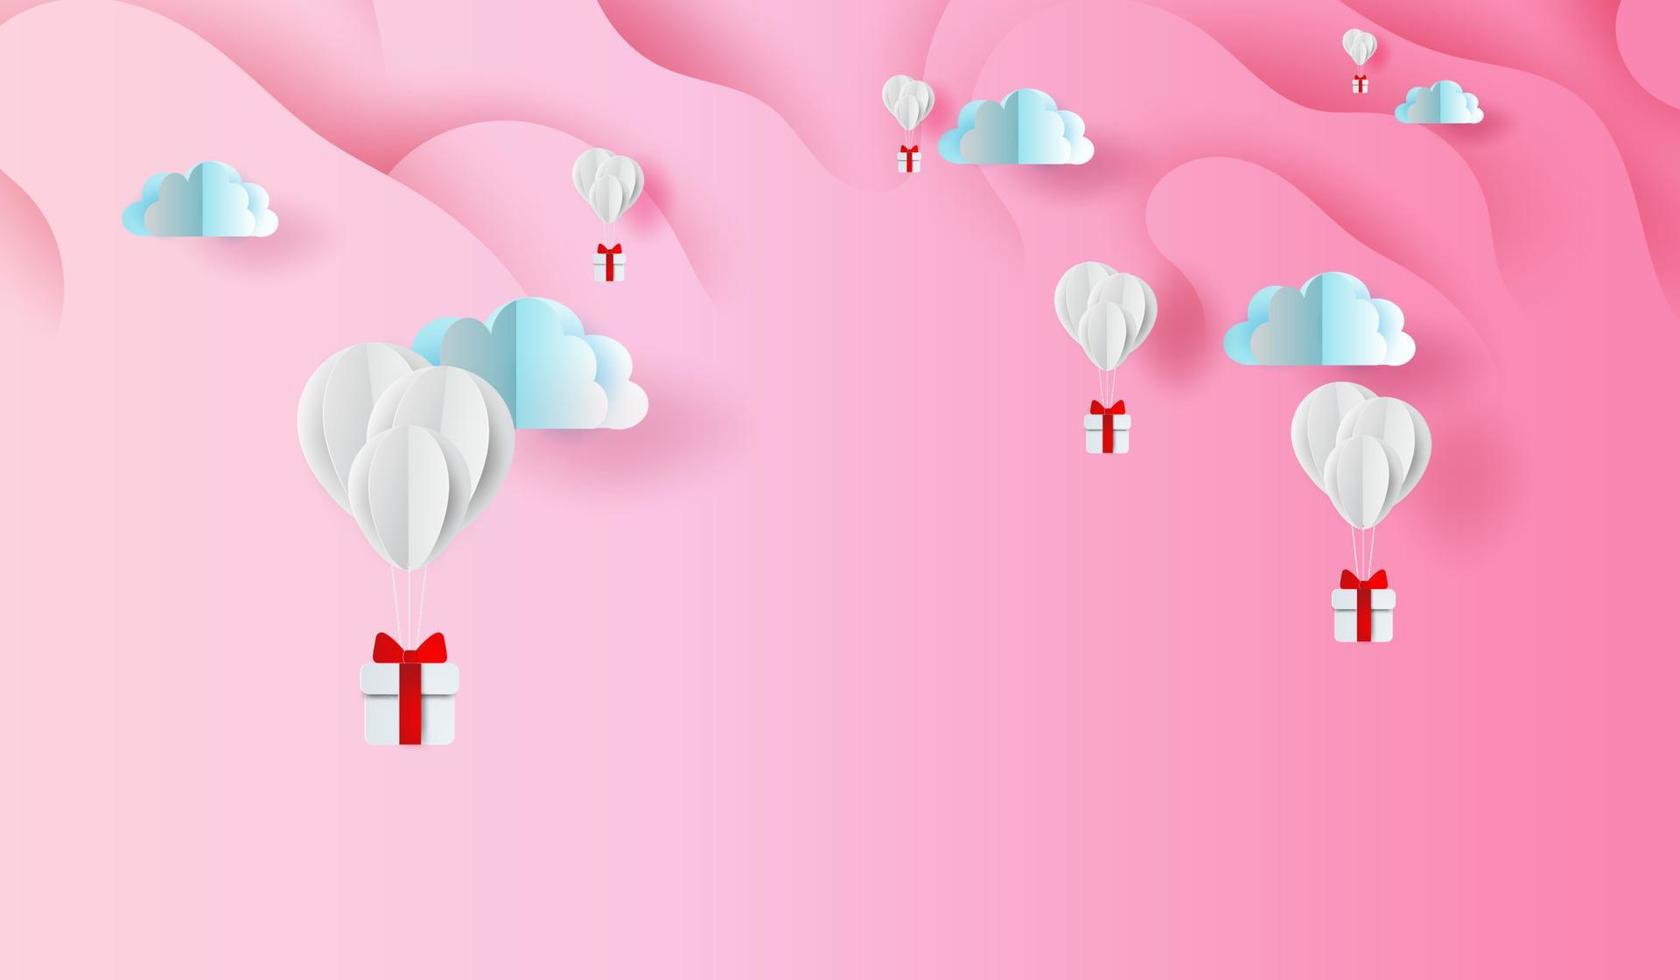 arte de papel 3D e design de artesanato de presentes de balões no fundo do céu rosa forma curva abstrata, flutuando com giftbox no ar clouds.valentine's day concept.elements vetor de fundo para cartão de felicitações